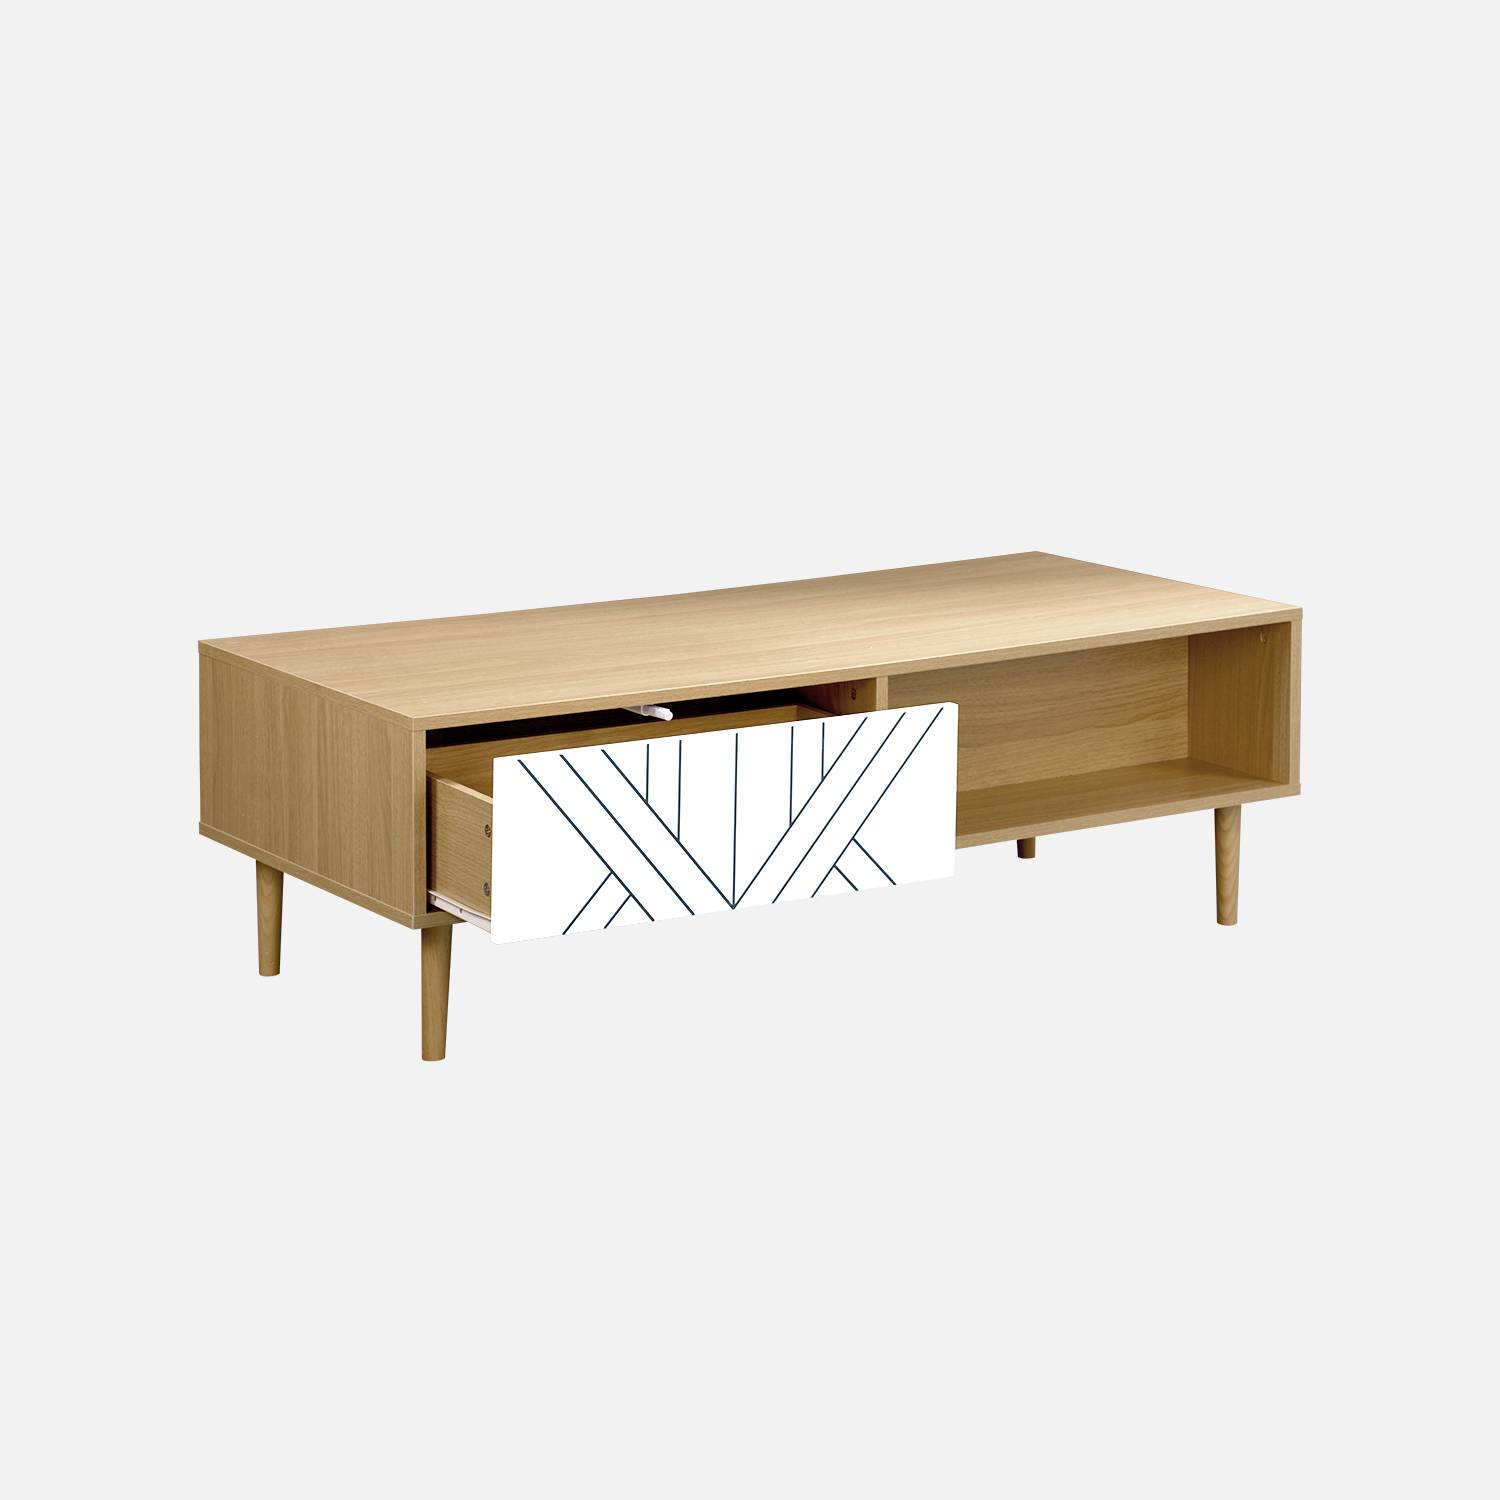 Table basse en décor bois et blanc - Mika - 2 tiroirs, 2 espaces de rangement, L 120 x l 55 x H 40cm,sweeek,Photo4